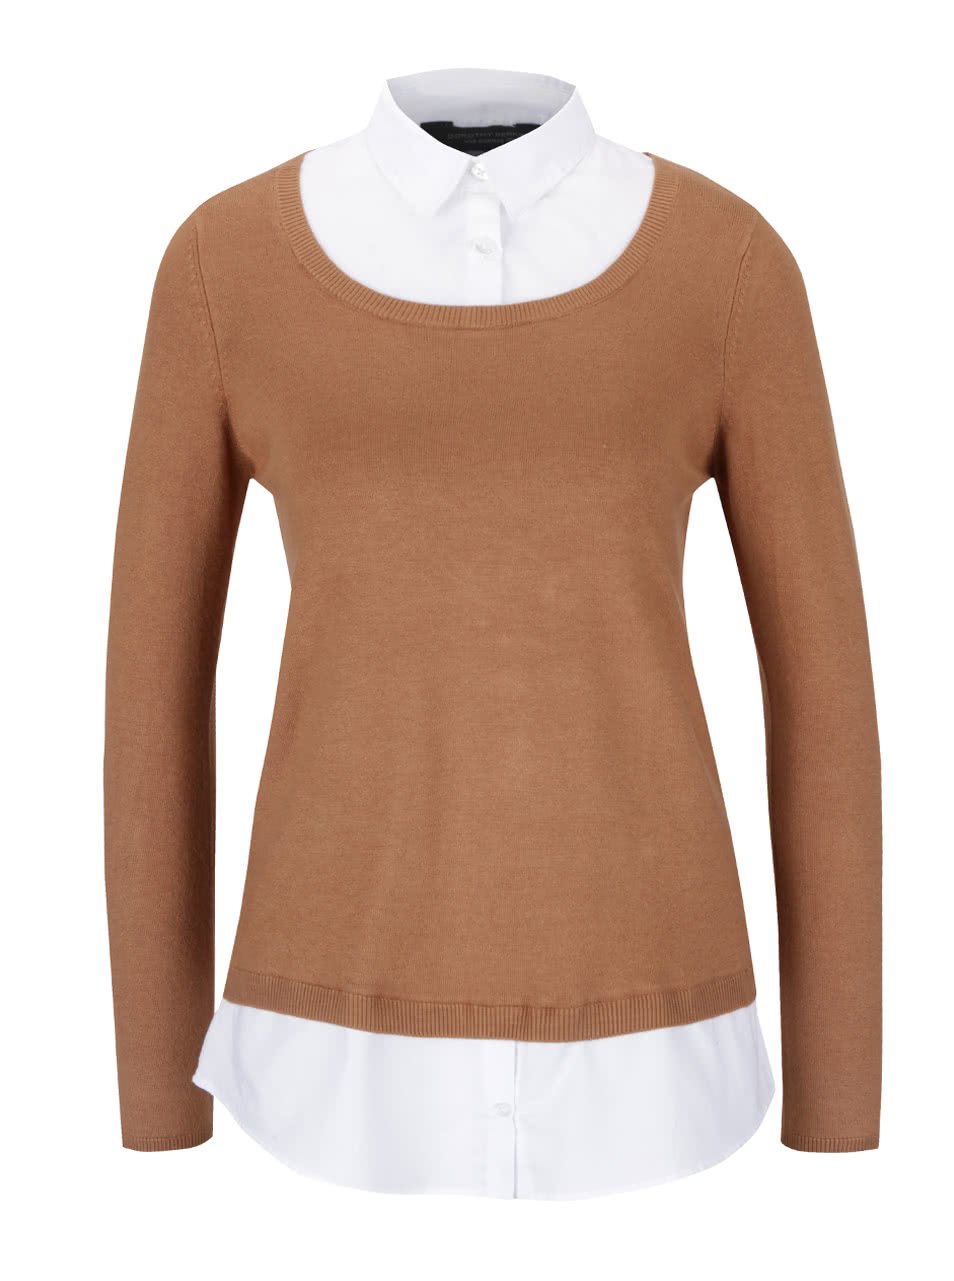 Světle hnědý svetr s košilí 2v1 Dorothy Perkins